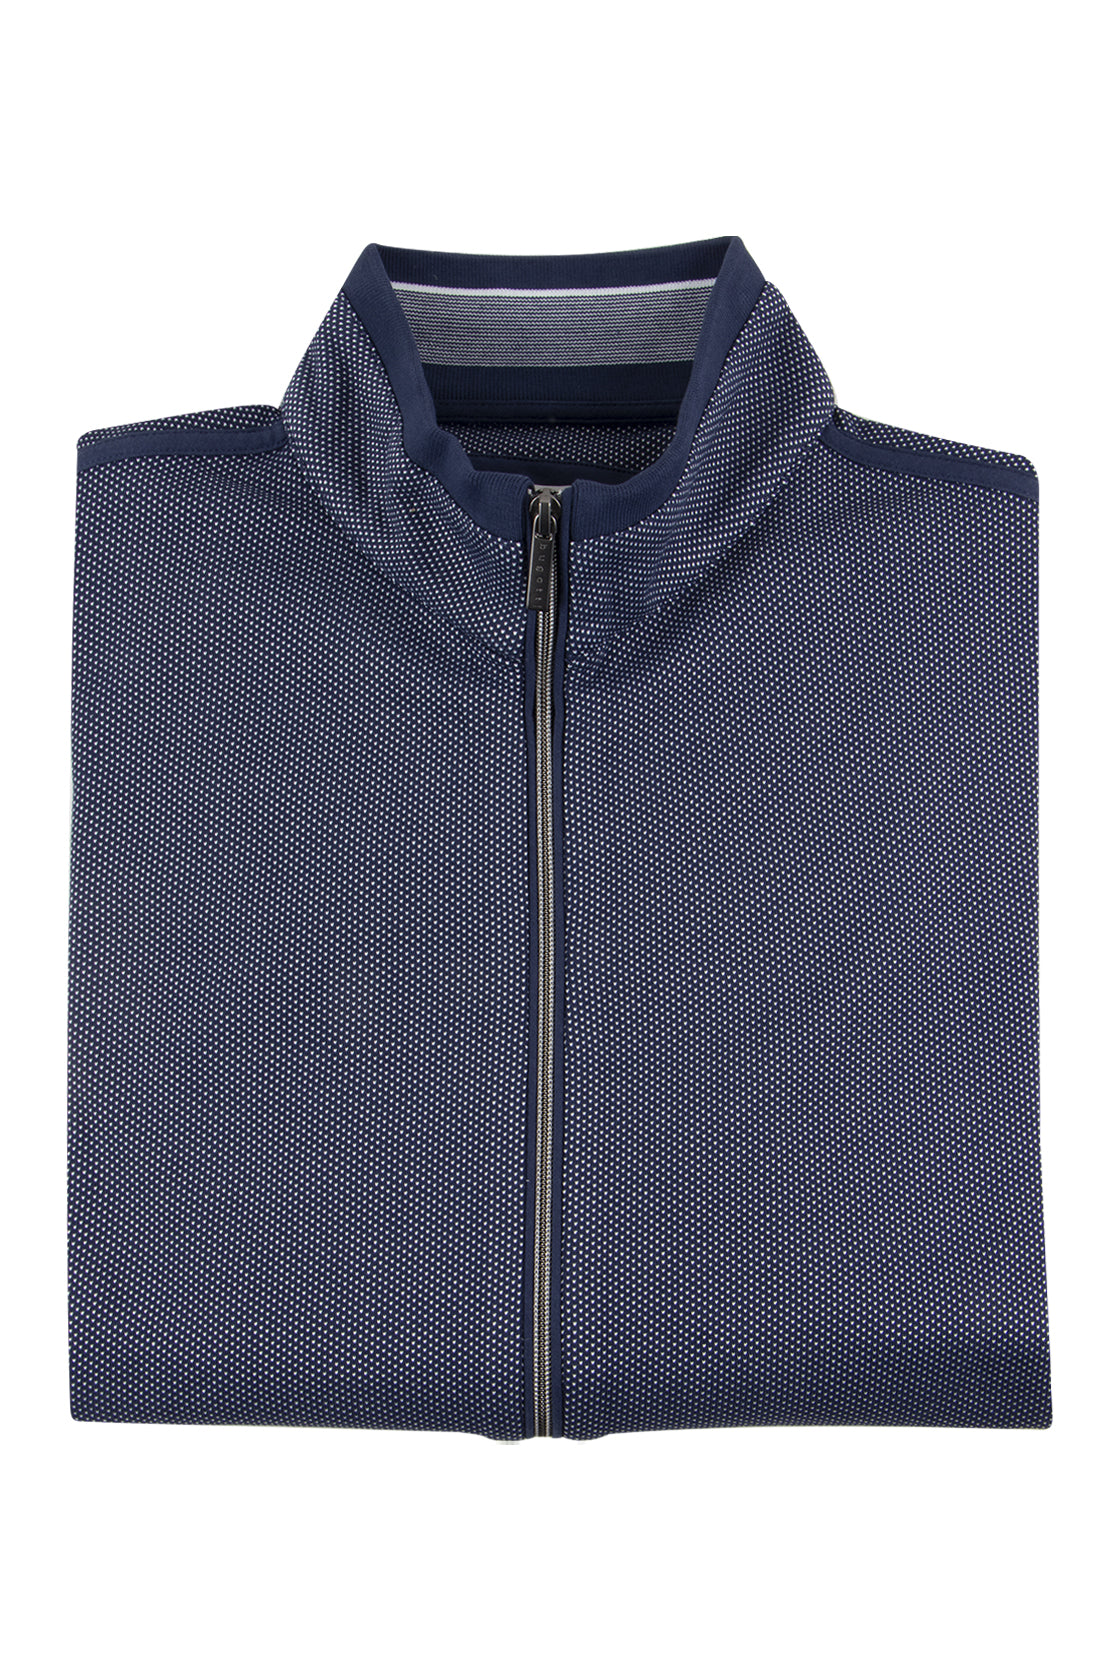 – Bugatti Sweater Full Zip Navy